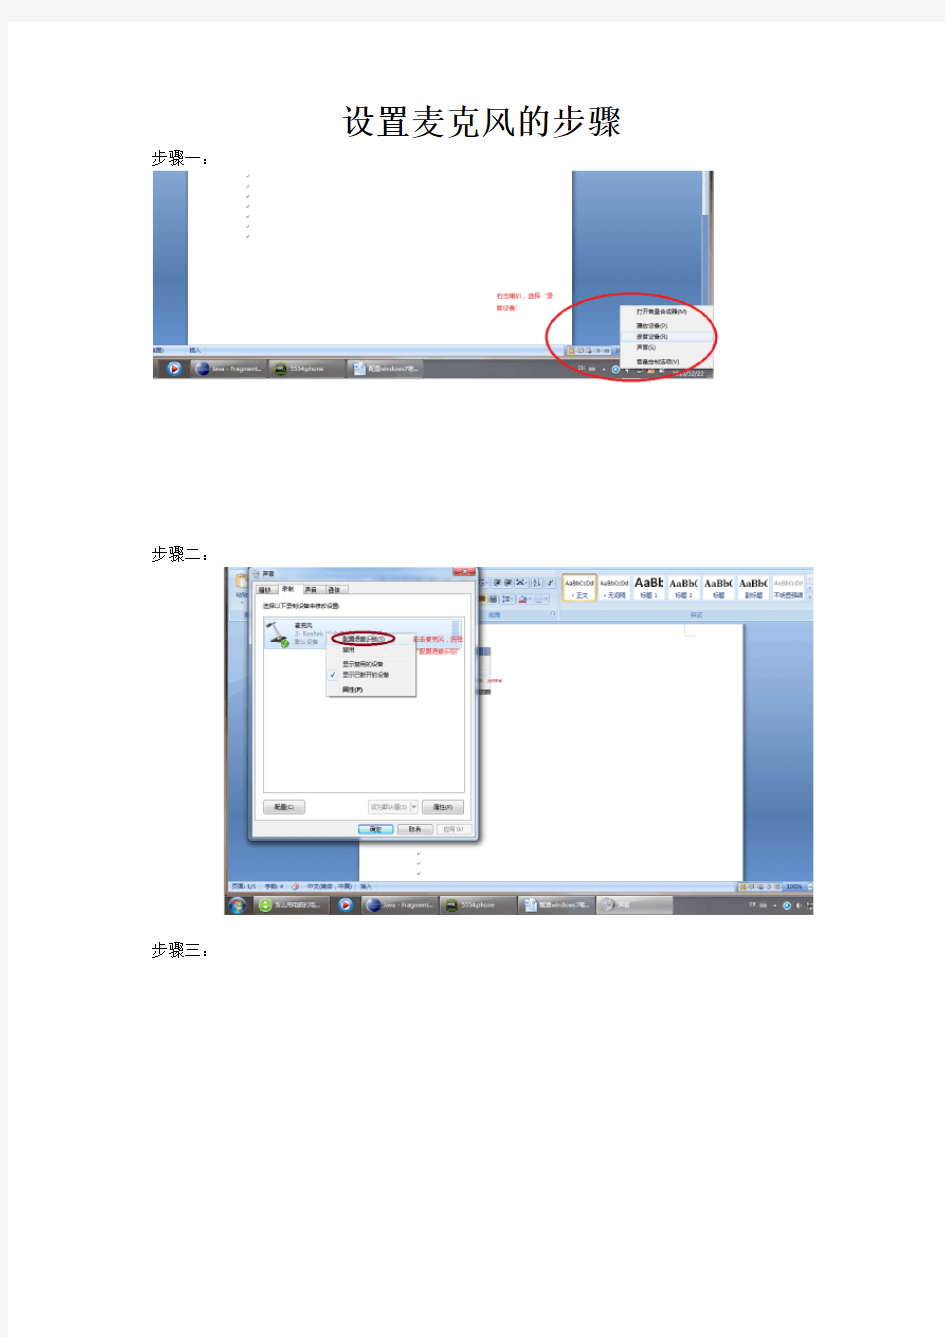 配置windows7笔记本电脑麦克风的步骤